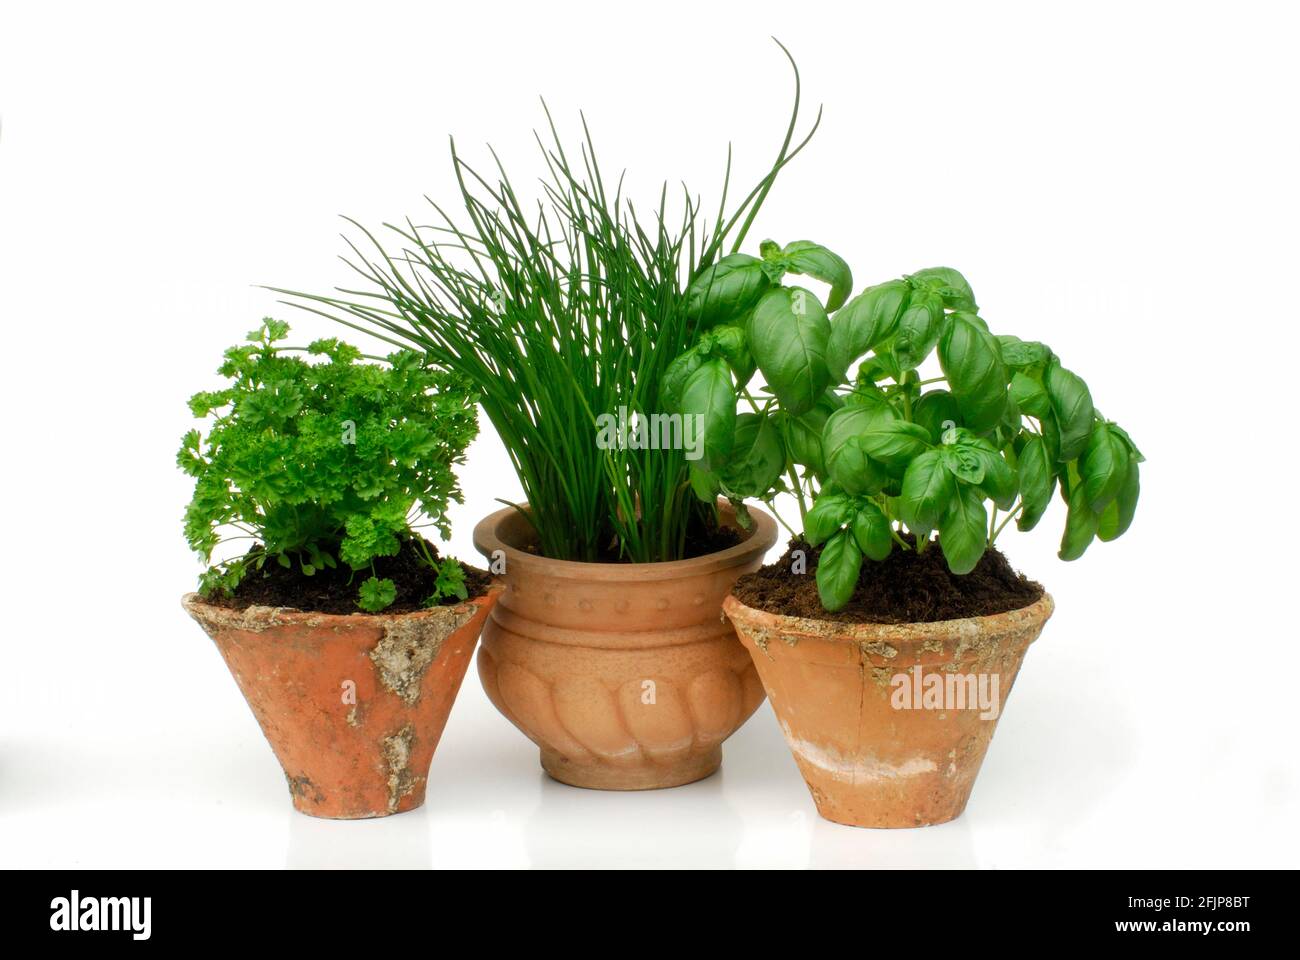 Curly parsley, Chive (Allium schoenoprasum) and Basil (Ocimum basilicum) in pots (Petroslinum crispum) Stock Photo